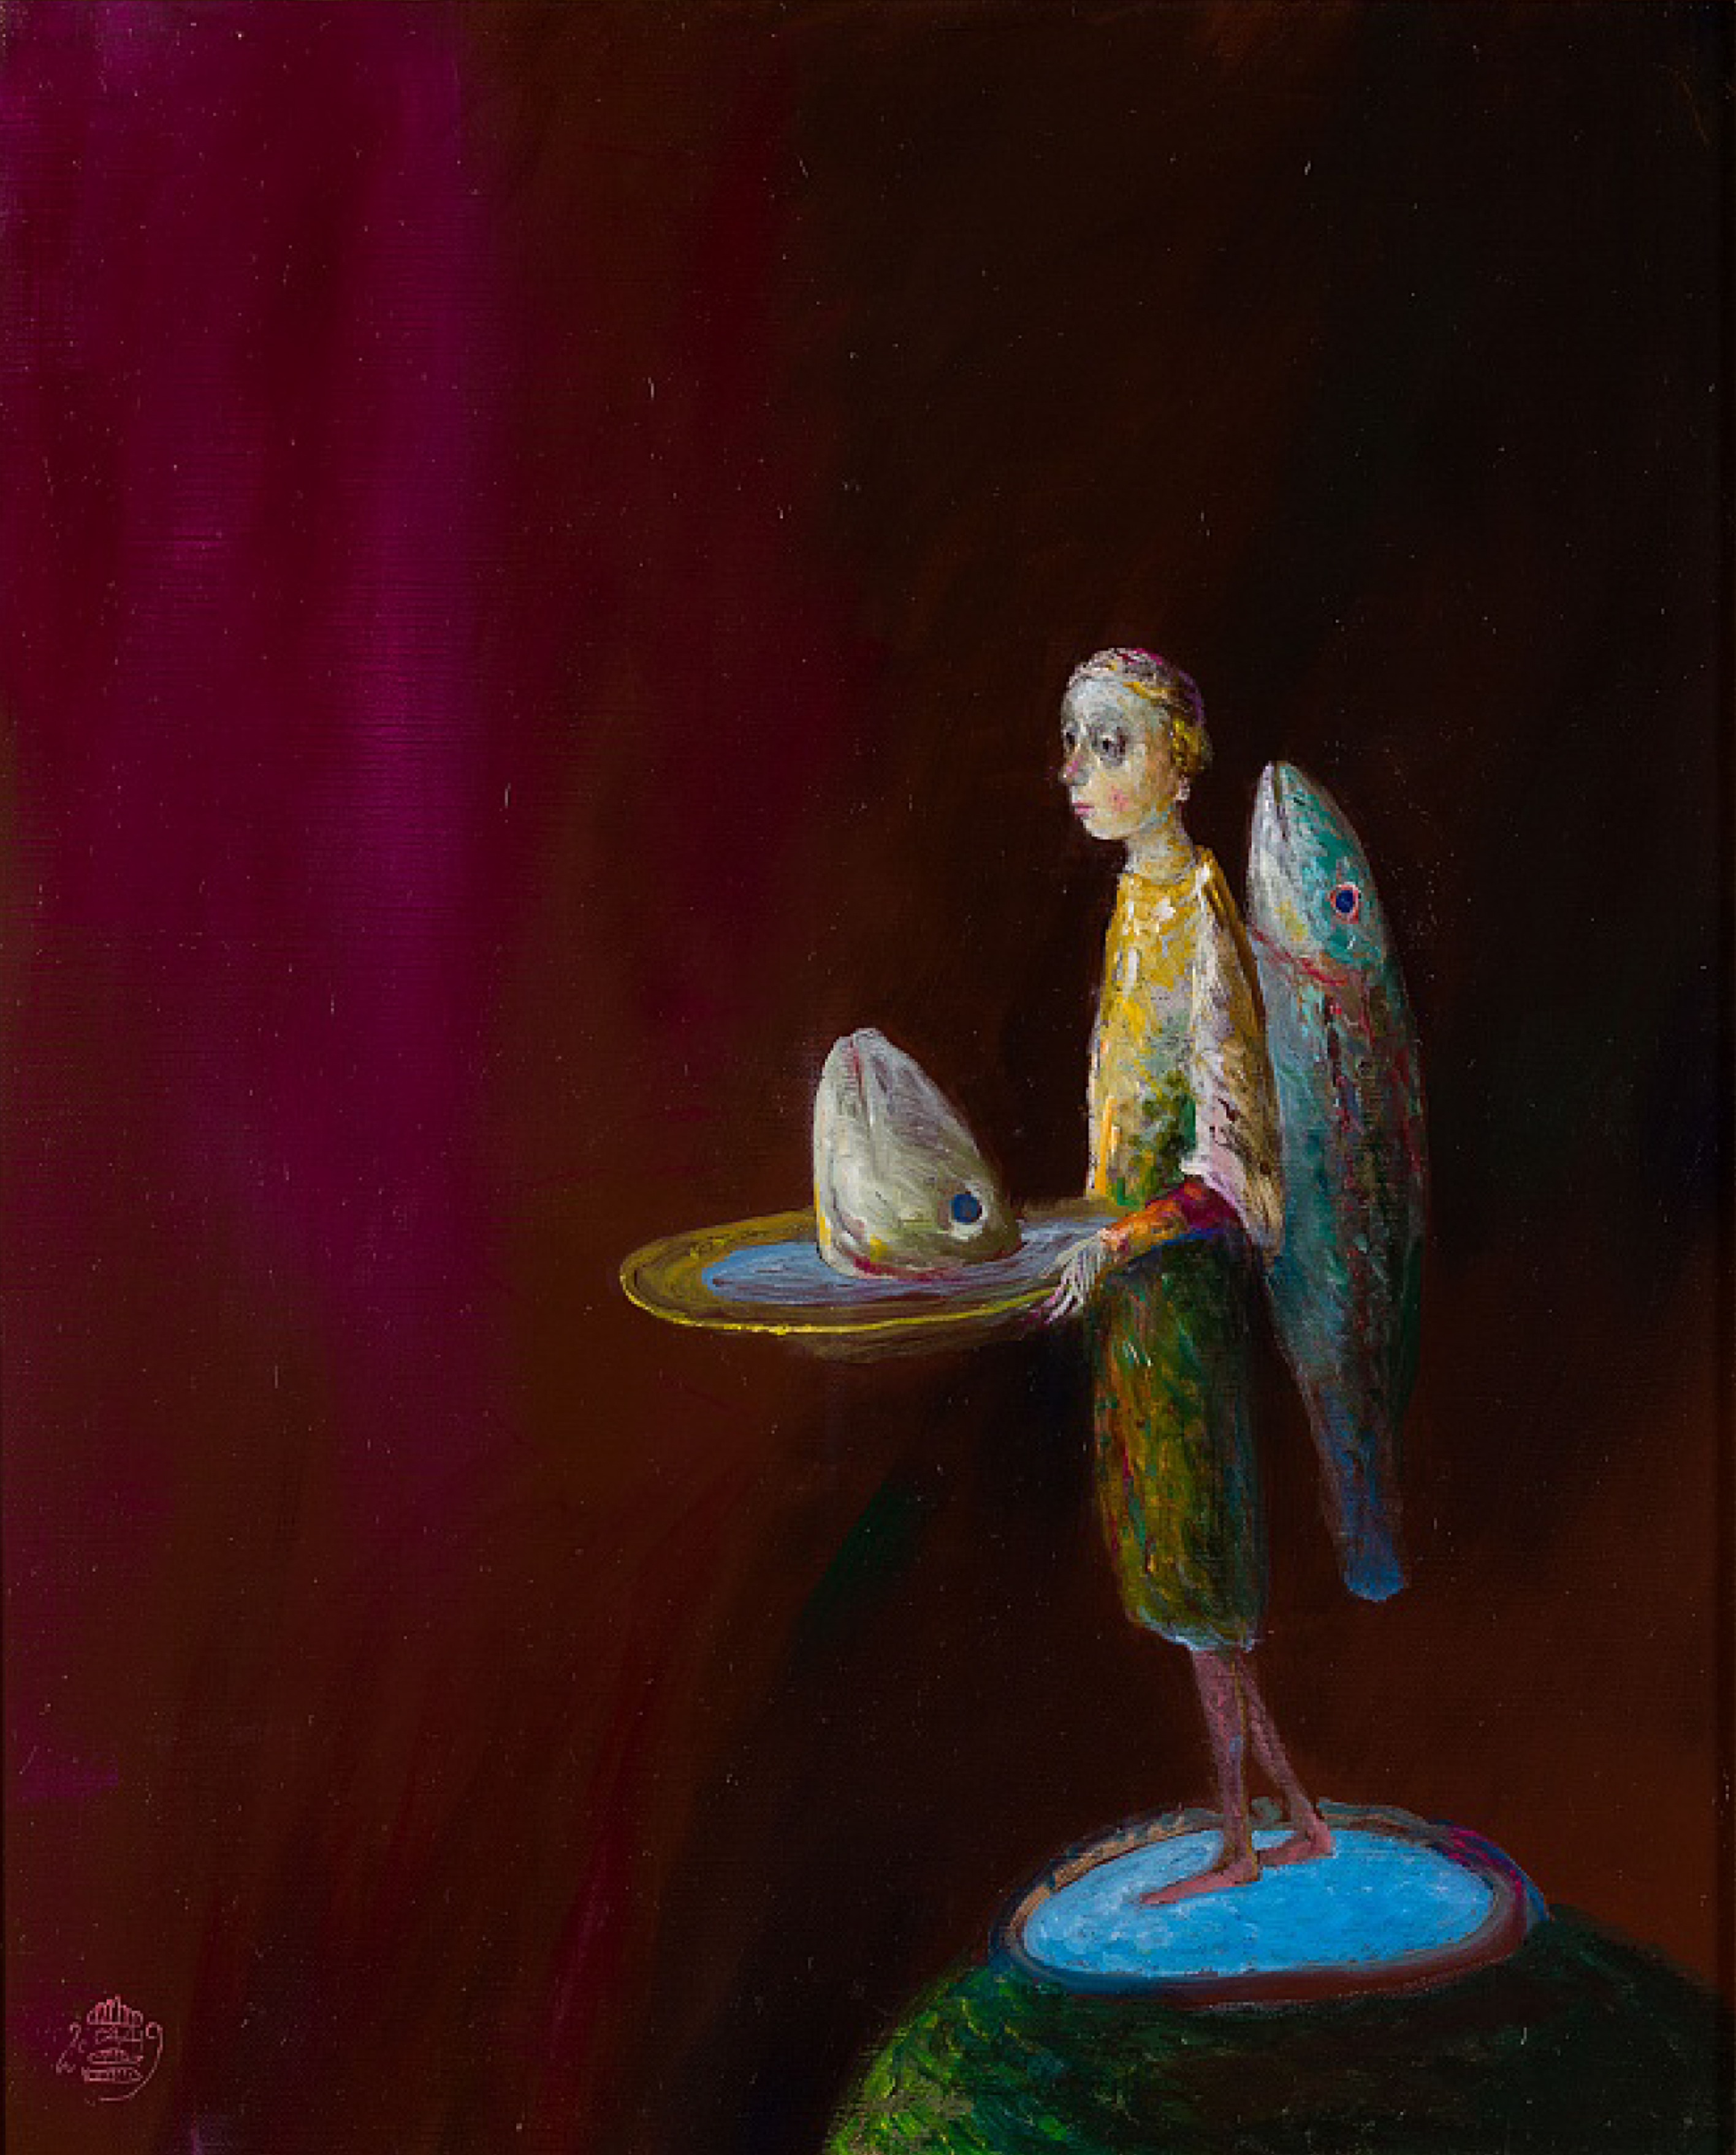 Stefan Caltia Stefan Caltia - Dimineata pescarului, oil on canvas, 65 x 53 cm, 2019